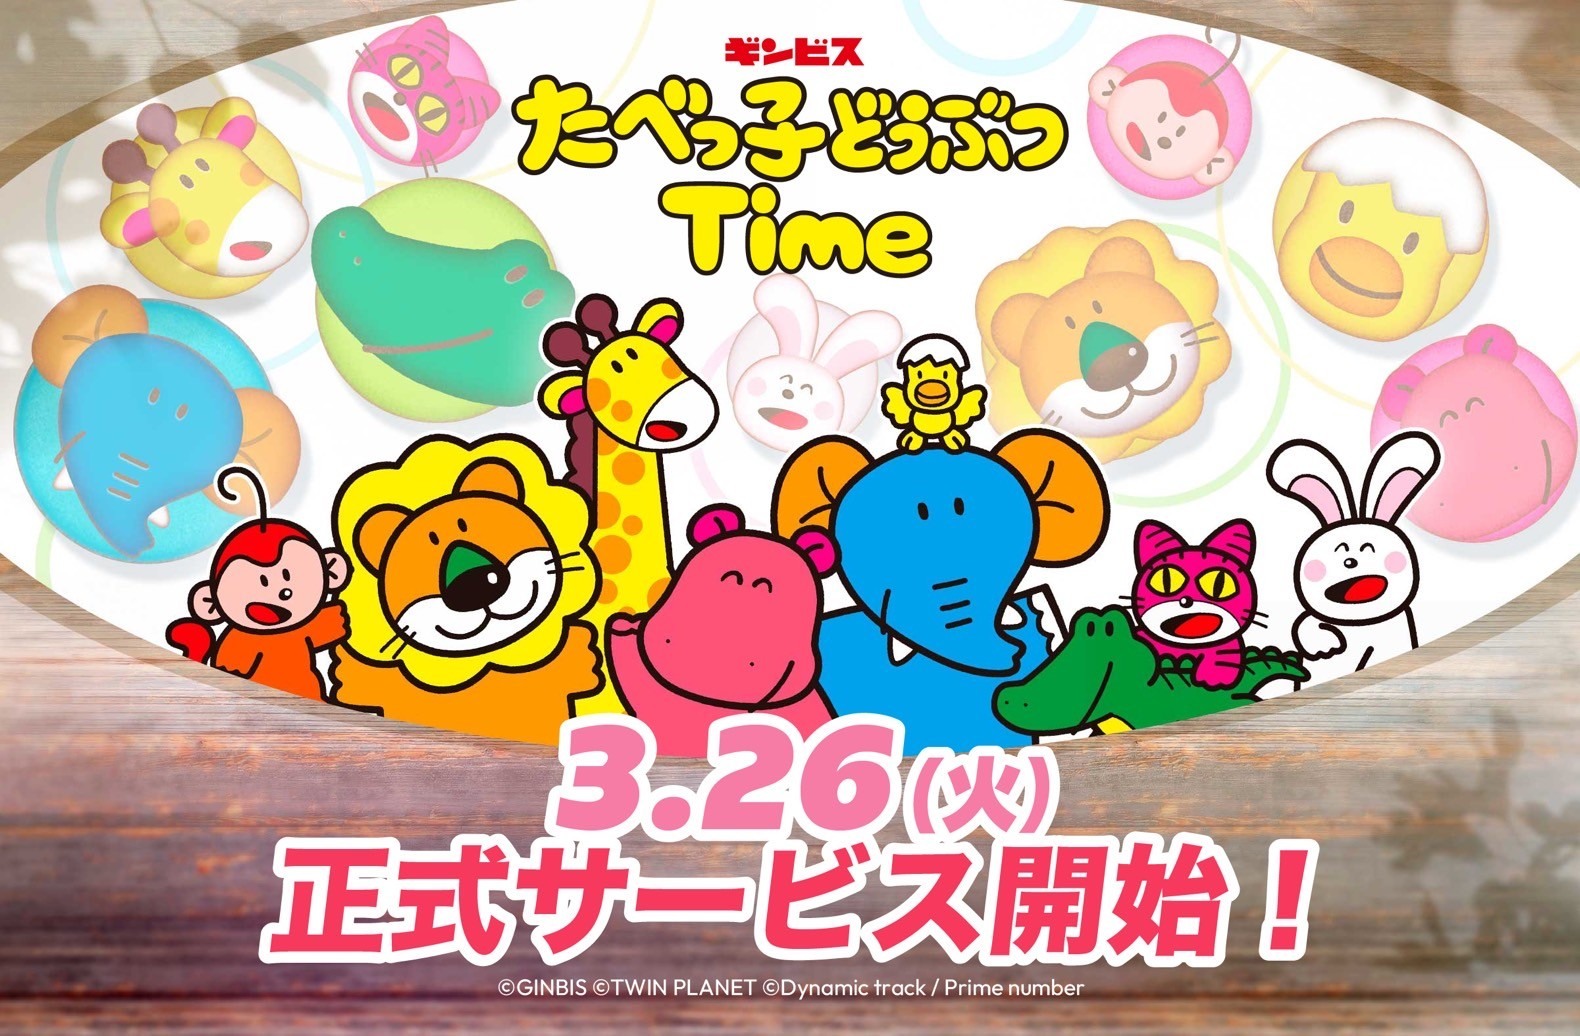 日本老牌零食「愉快动物饼」首款官方益智游戏《愉快动物饼Time》于日本推出《たべっ子どうぶつTime》 - 巴哈姆特